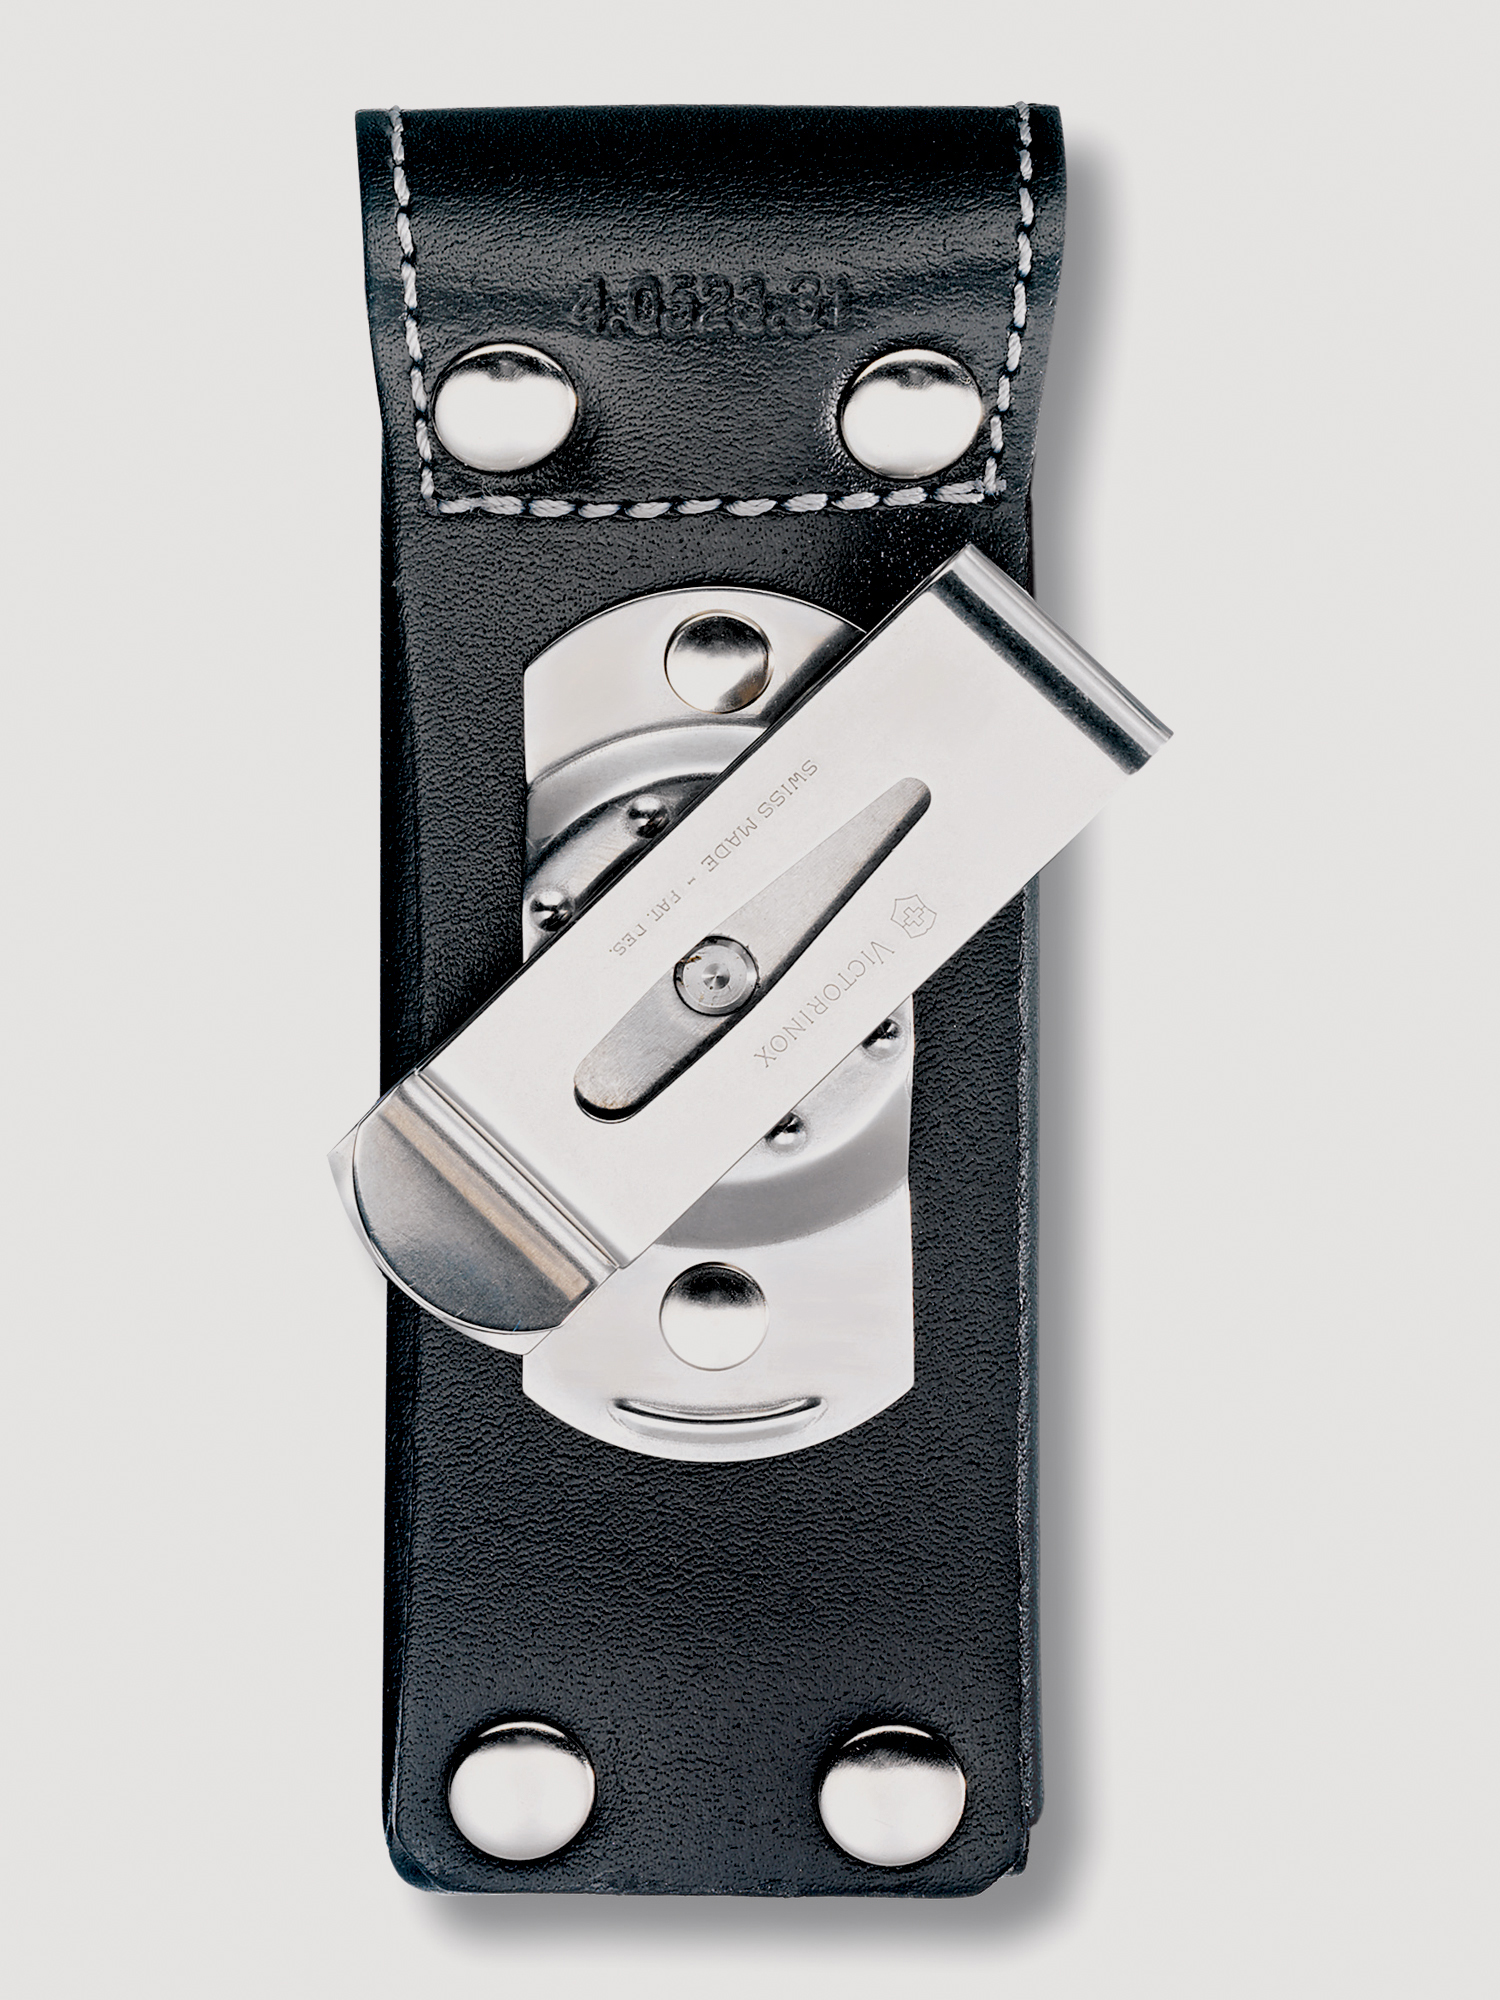 Чехол на ремень VICTORINOX для ножей 111 мм толщиной 3 уровня, с поворотной клипсой, кожаный, чёрный, Черный чехол на ремень victorinox для ножей 91 мм толщиной 5 8 уровней с клипсой кожаный чёрный